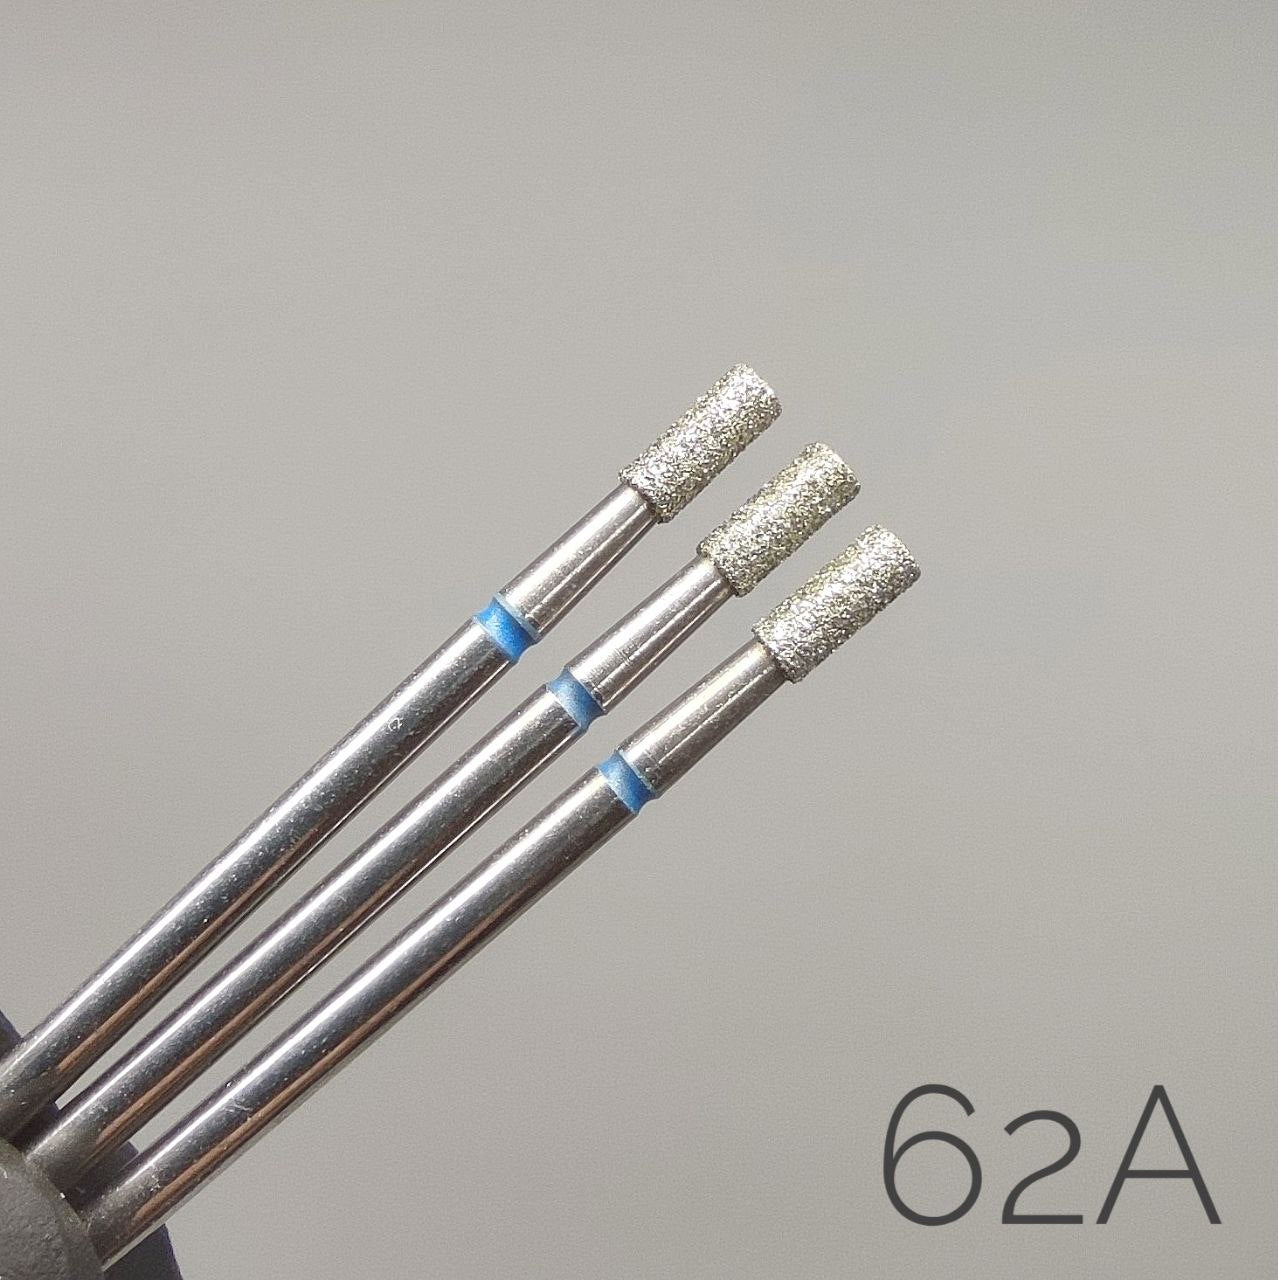 Fresa de diamante Micrófono. Azul, 2.3mm. 62A